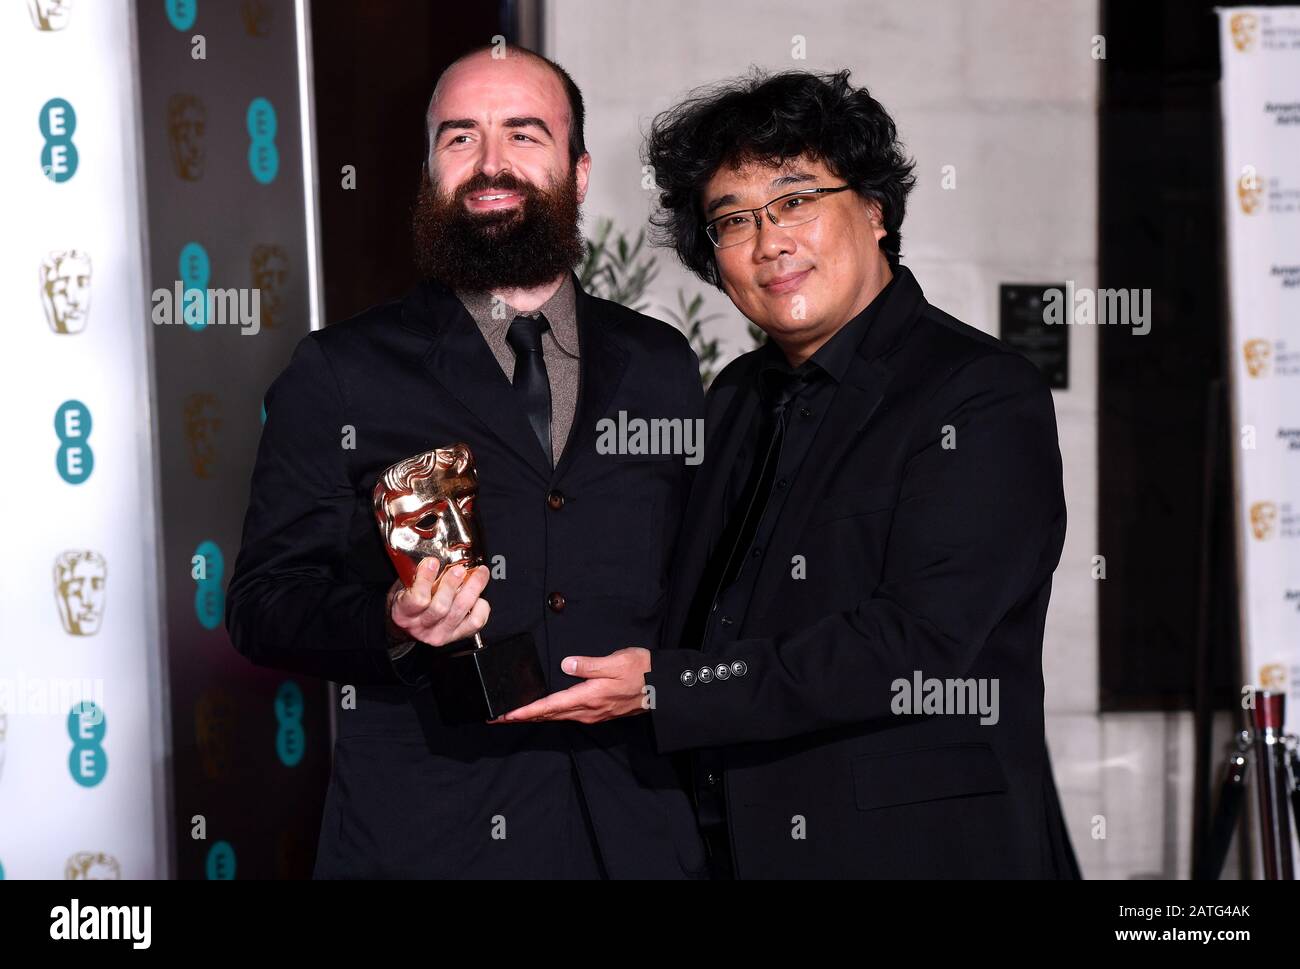 Bong Joon Ho (rechts) mit seinem Film Nicht In Der englischen Sprache Bafta für Parasiten, die an der After-Show-Party für die 73. British Academy Film Awards teilnehmen. Stockfoto